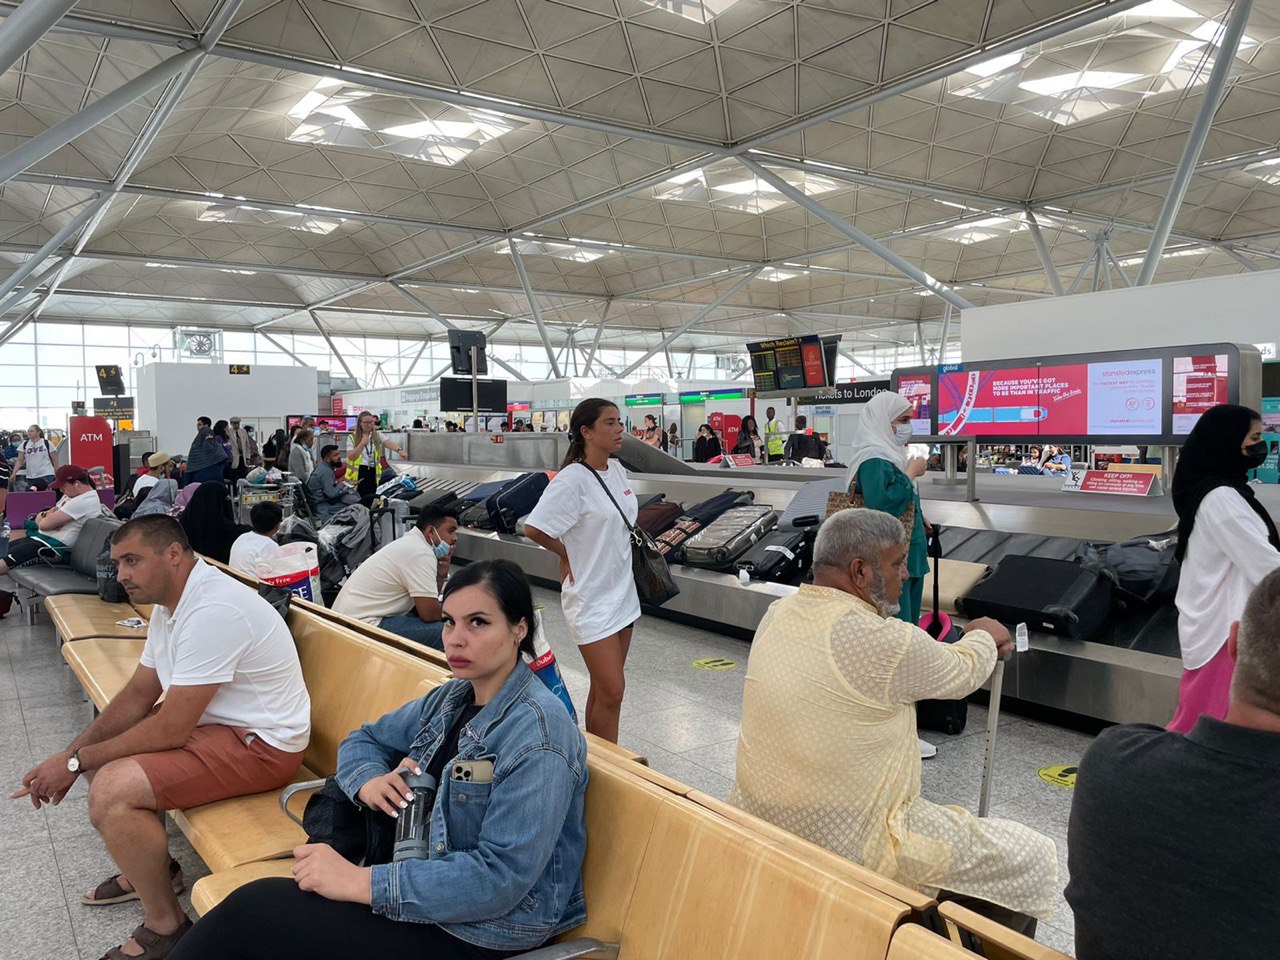 Orang – orang yang sedang mengambil bagasi di ruang kedatangan bandara Stansted London (Foto: Fanya/ vibizmedia)